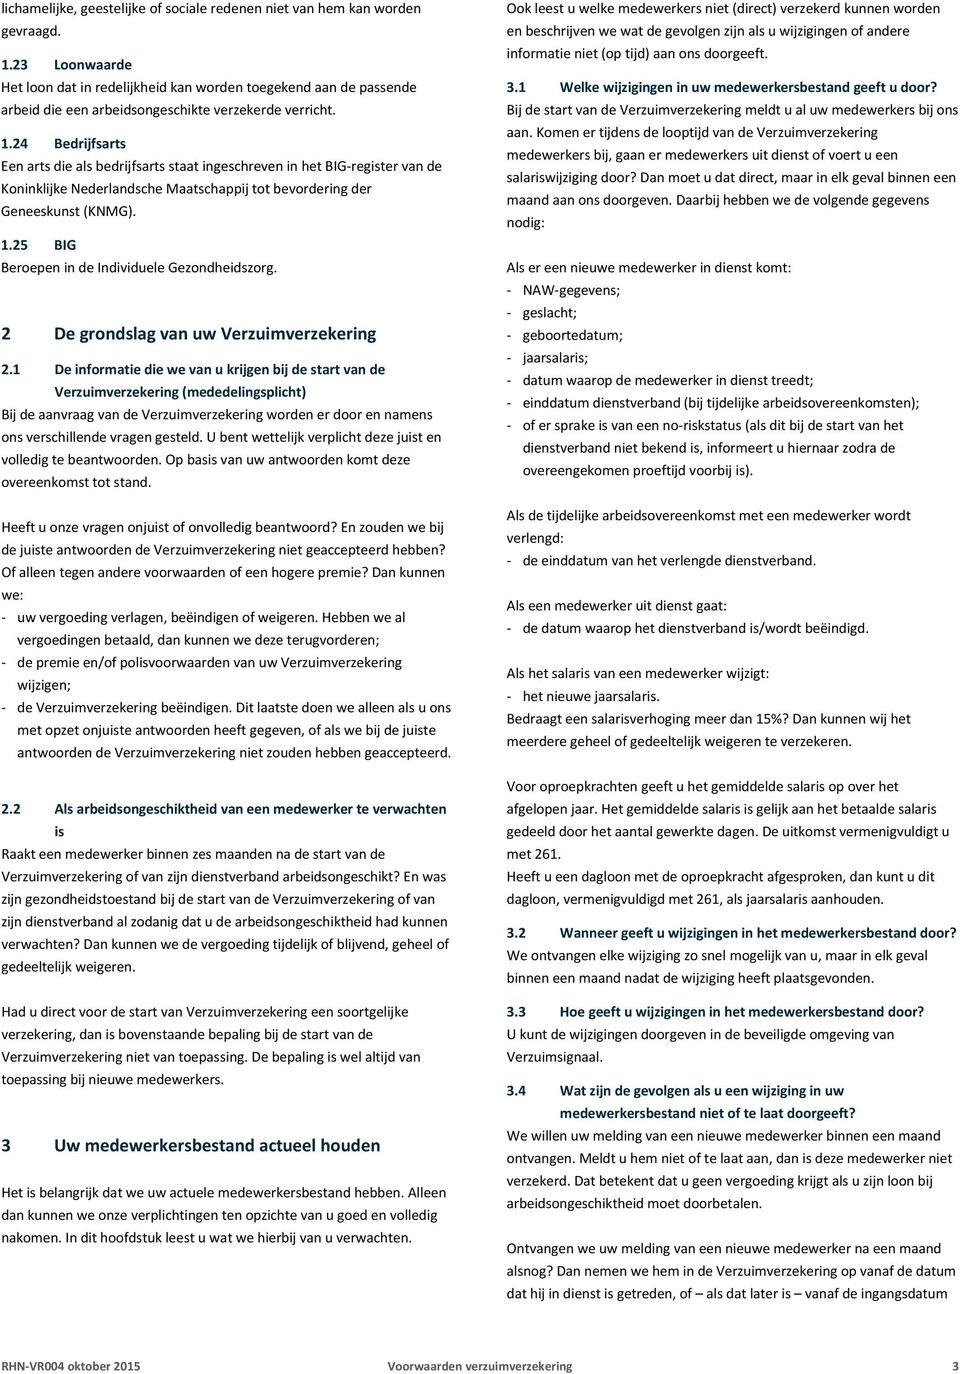 24 Bedrijfsarts Een arts die als bedrijfsarts staat ingeschreven in het BIG-register van de Koninklijke Nederlandsche Maatschappij tot bevordering der Geneeskunst (KNMG). 1.